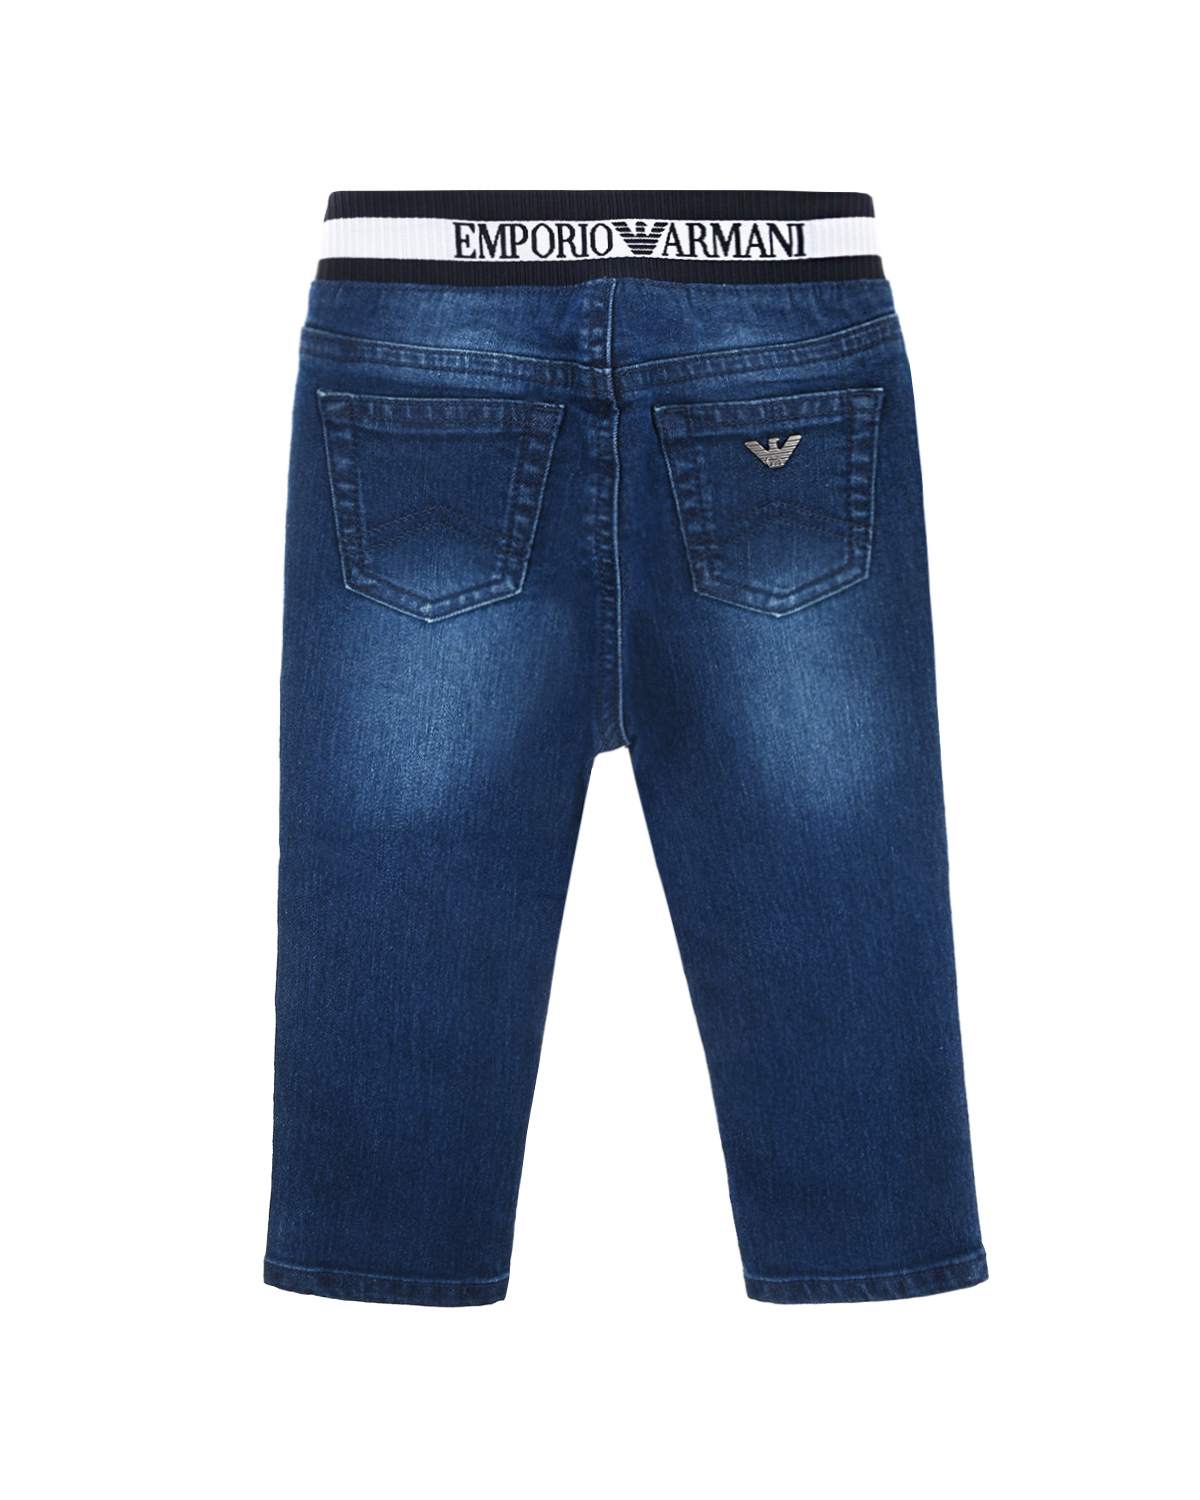 Синие джинсы с поясом-резинкой Emporio Armani детские - фото 2